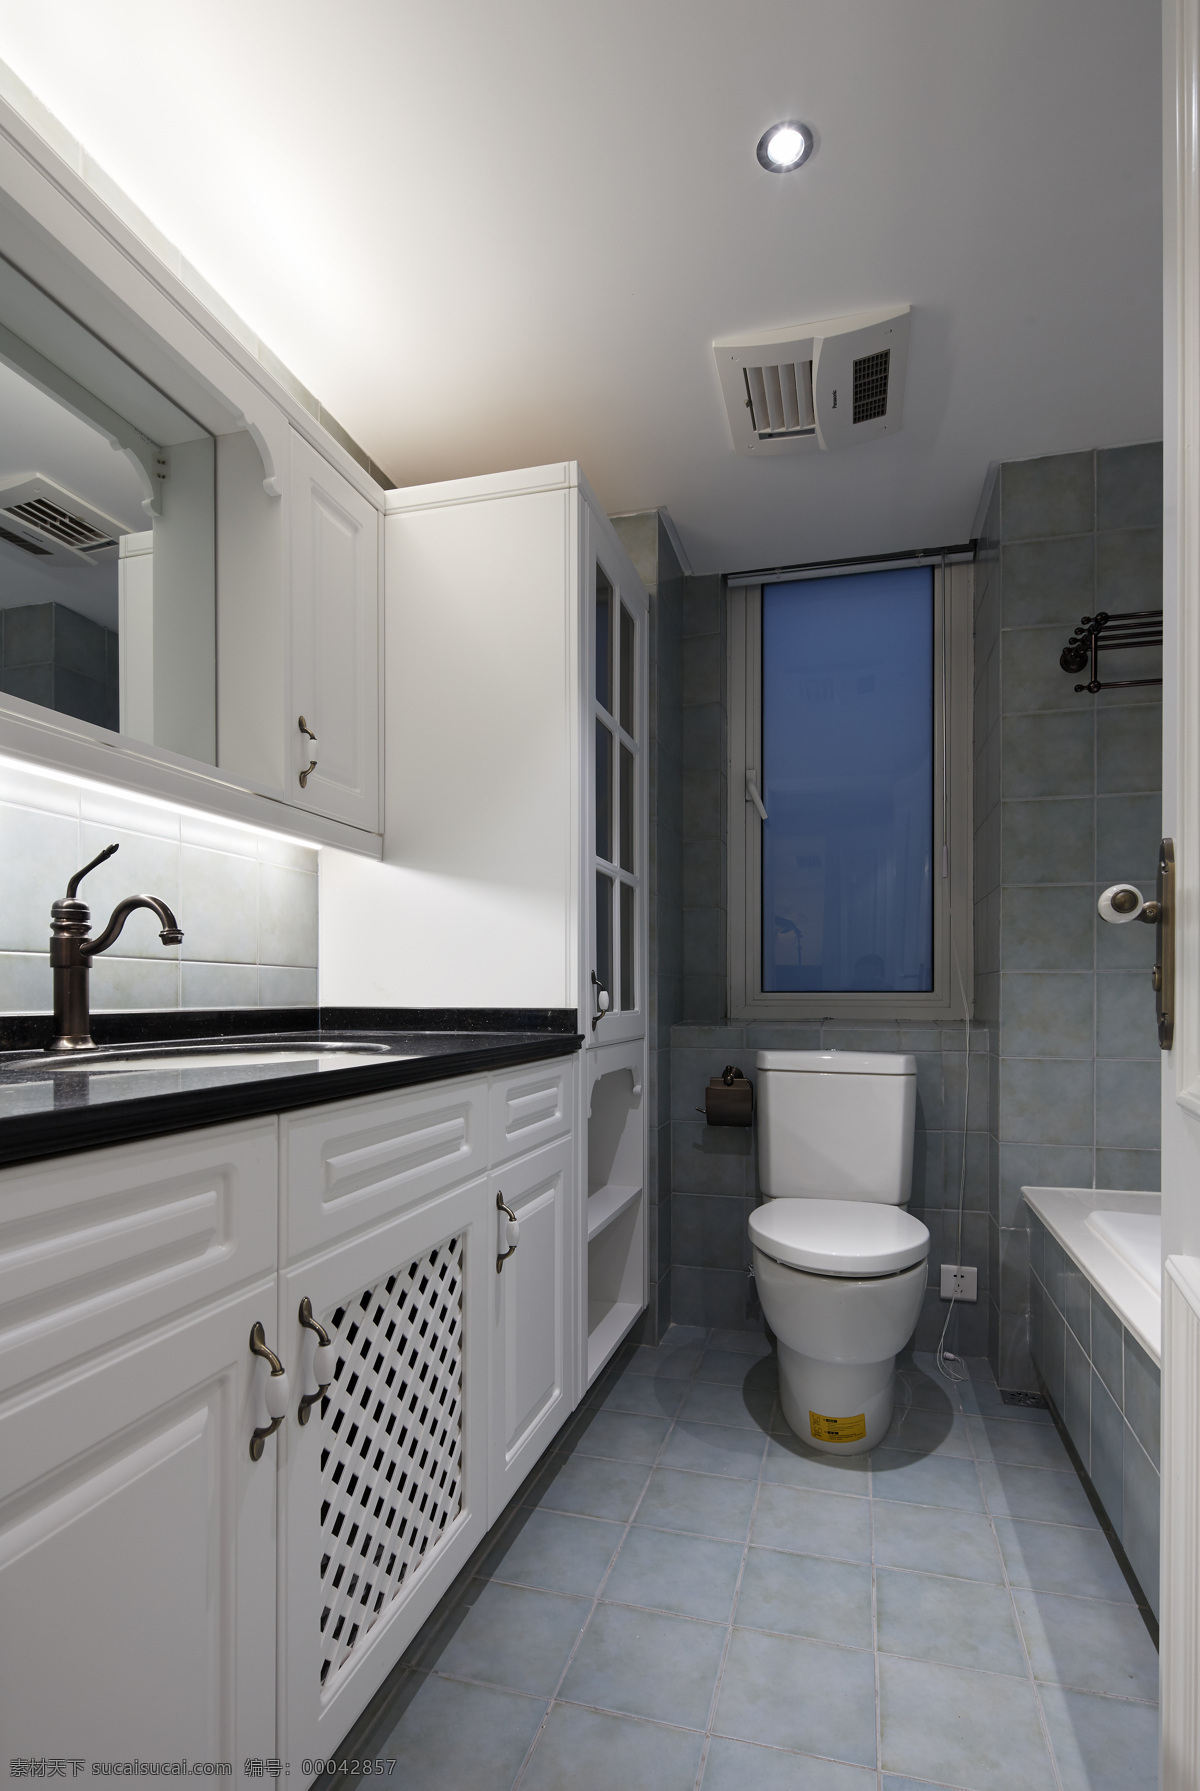 现代 极 简 卫生间 黑色 洗手台 室内装修 效果图 壁灯 黑色洗手台 灰色地板 卫生间装修